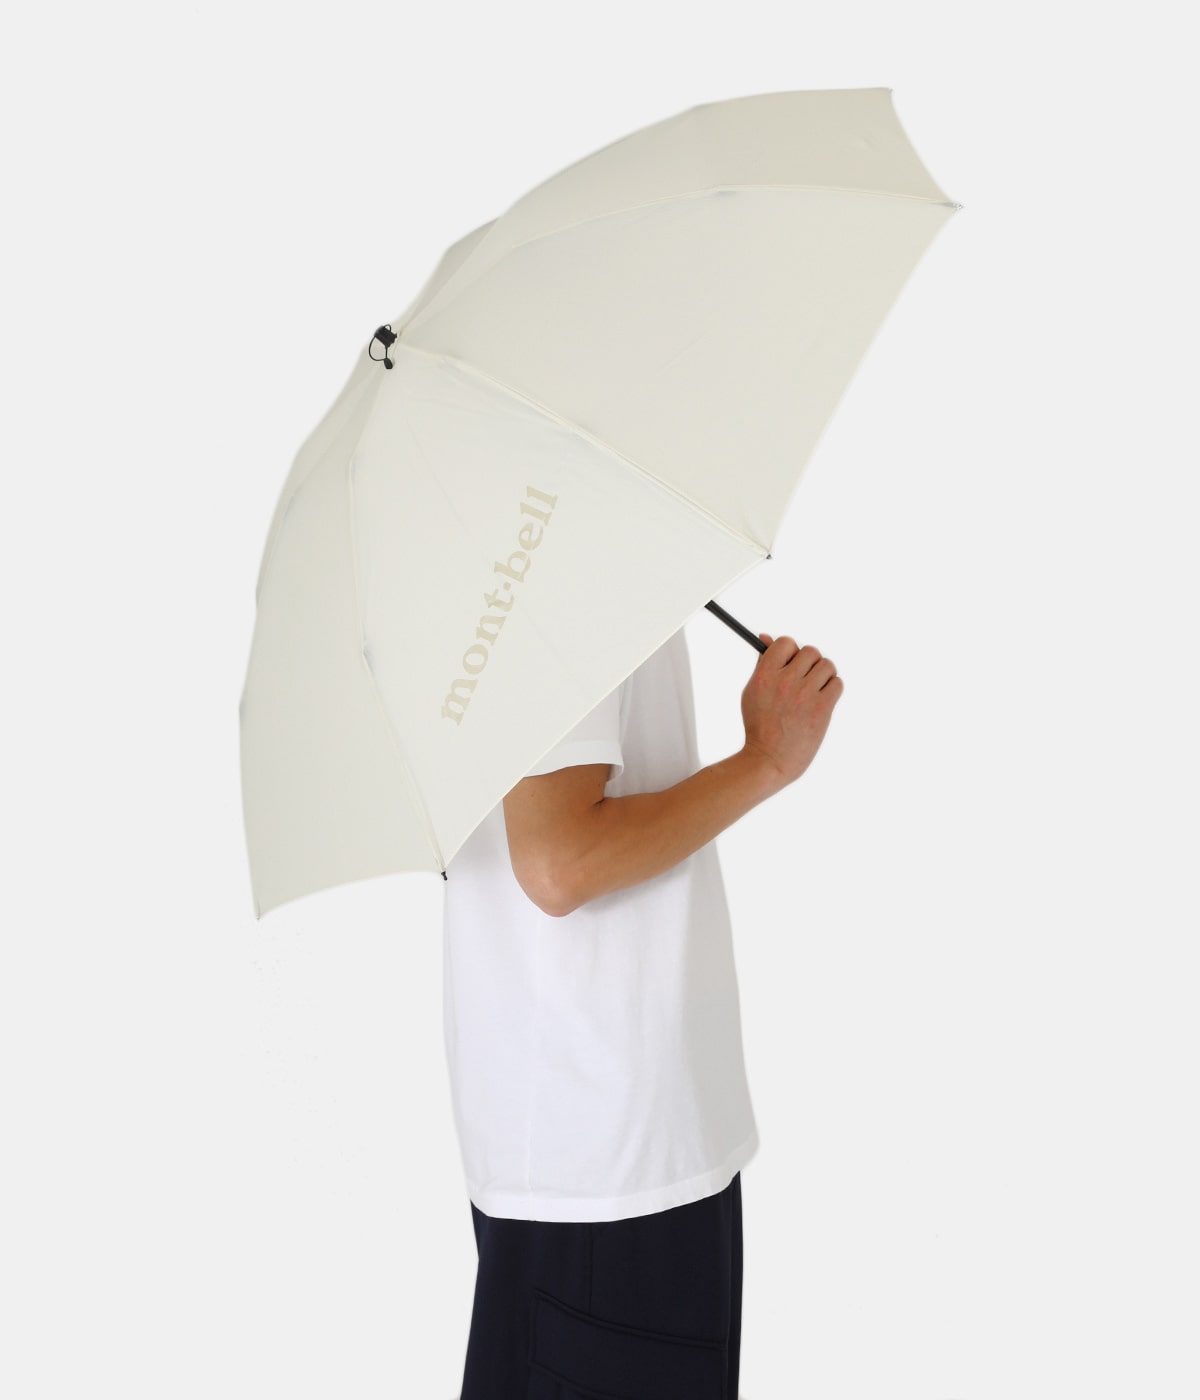 トレッキングアンブレラ / 折りたたみ傘